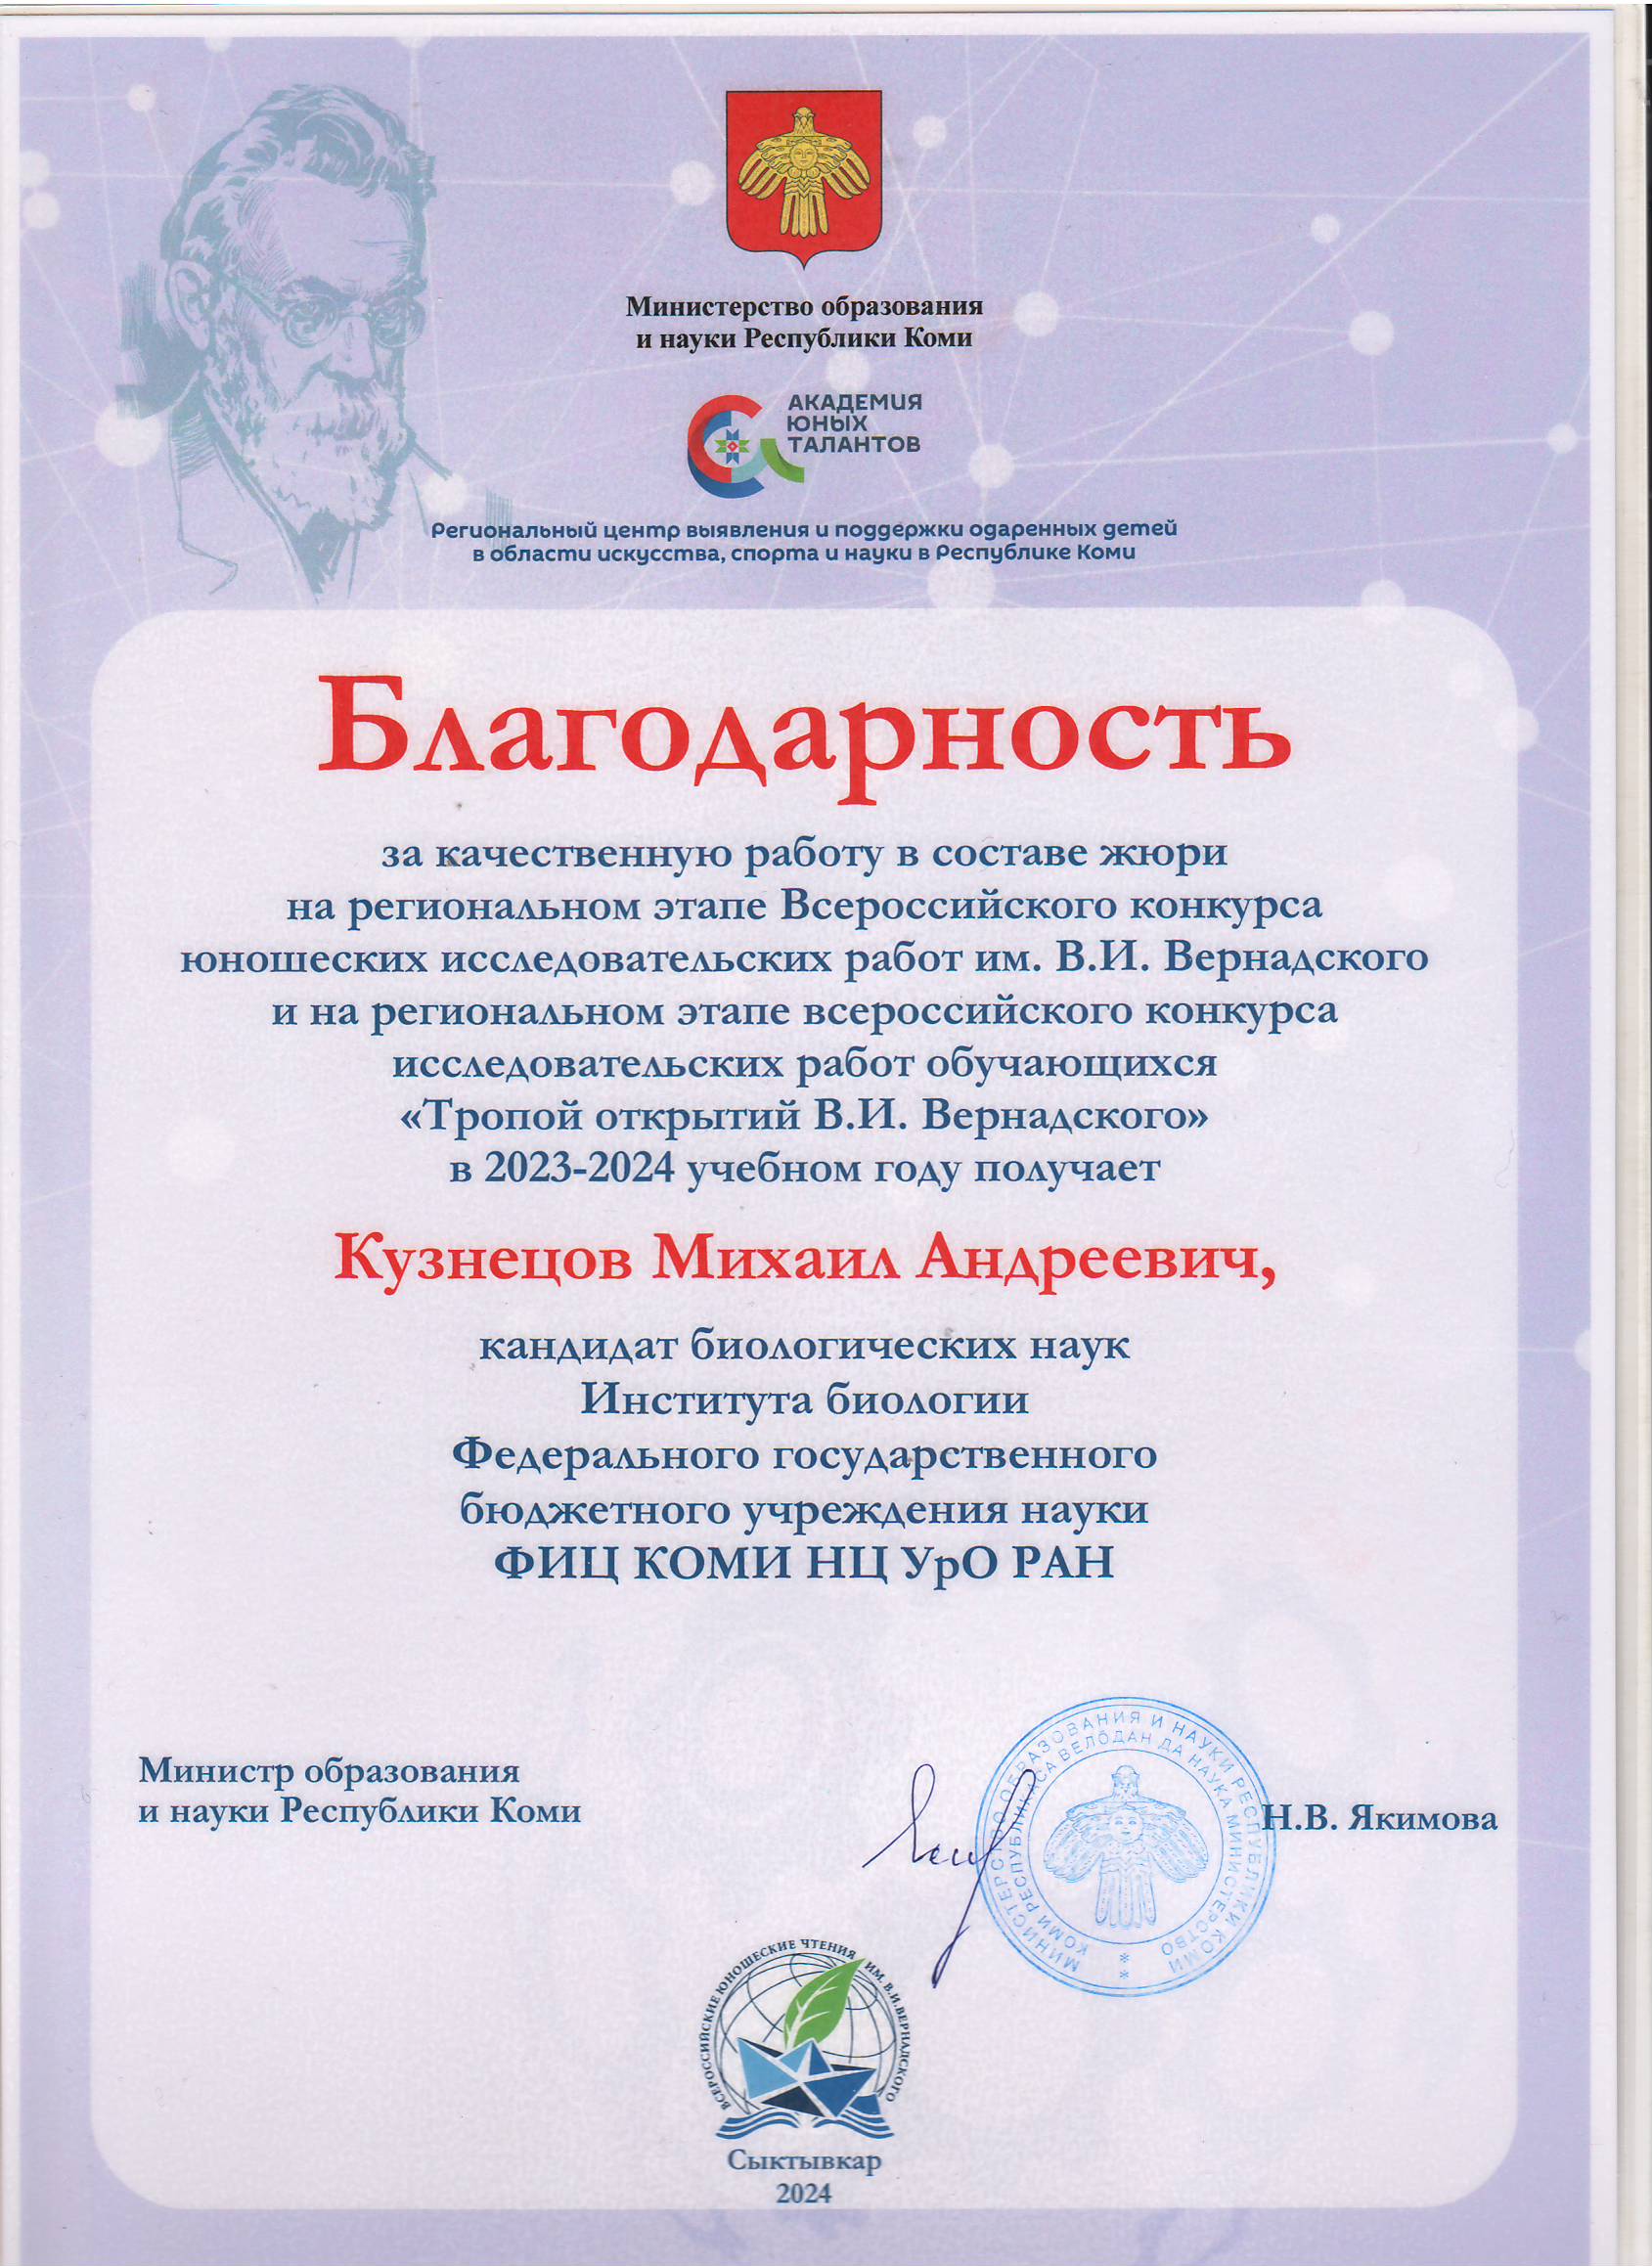 Благодарность Кузнецову Михаилу Андреевичу от Министерства образования и науки Республики Коми